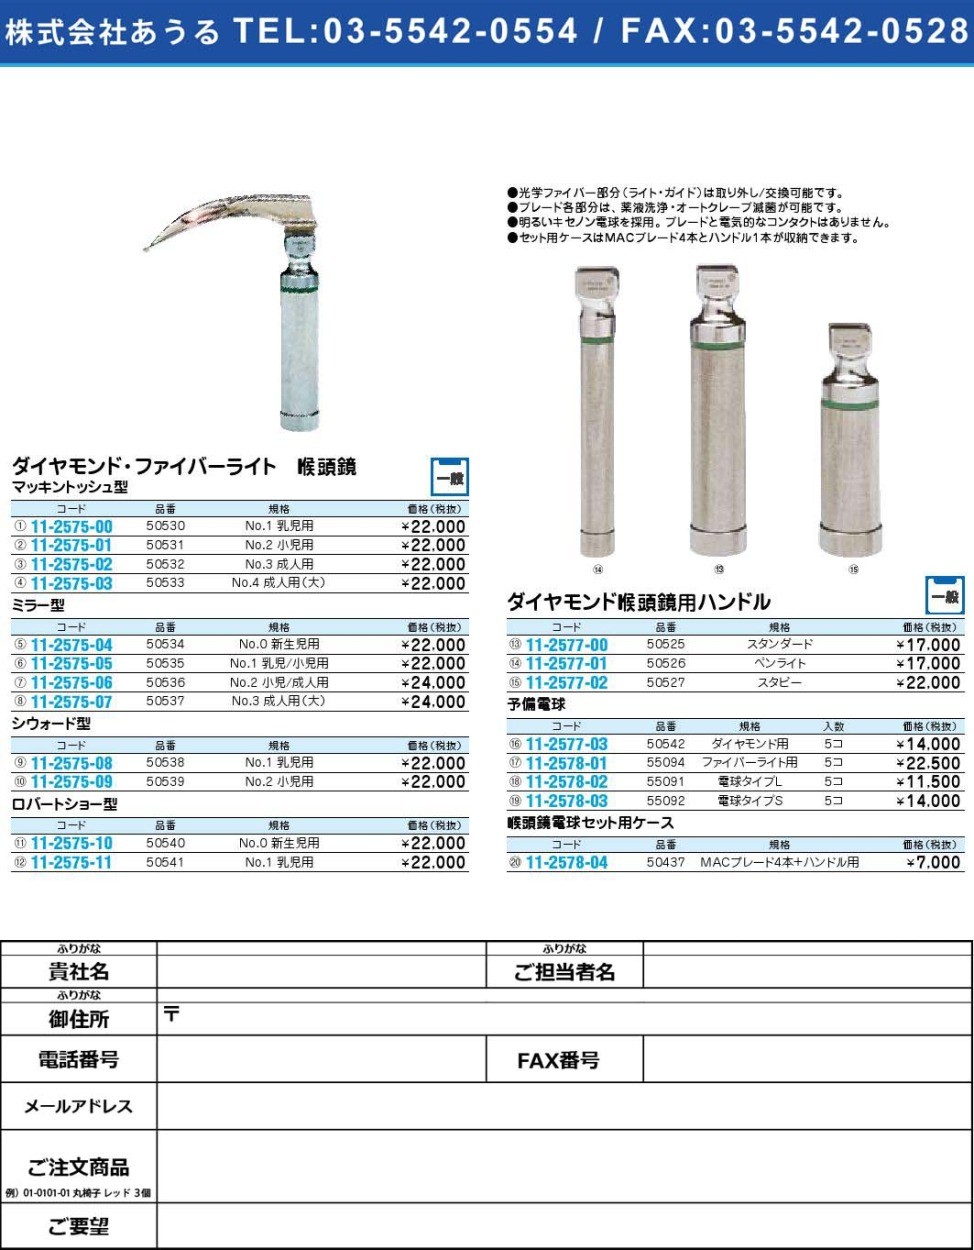 ダイヤモンド・ファイバーライト 喉頭鏡 ミラー型50536(11-2575-06)